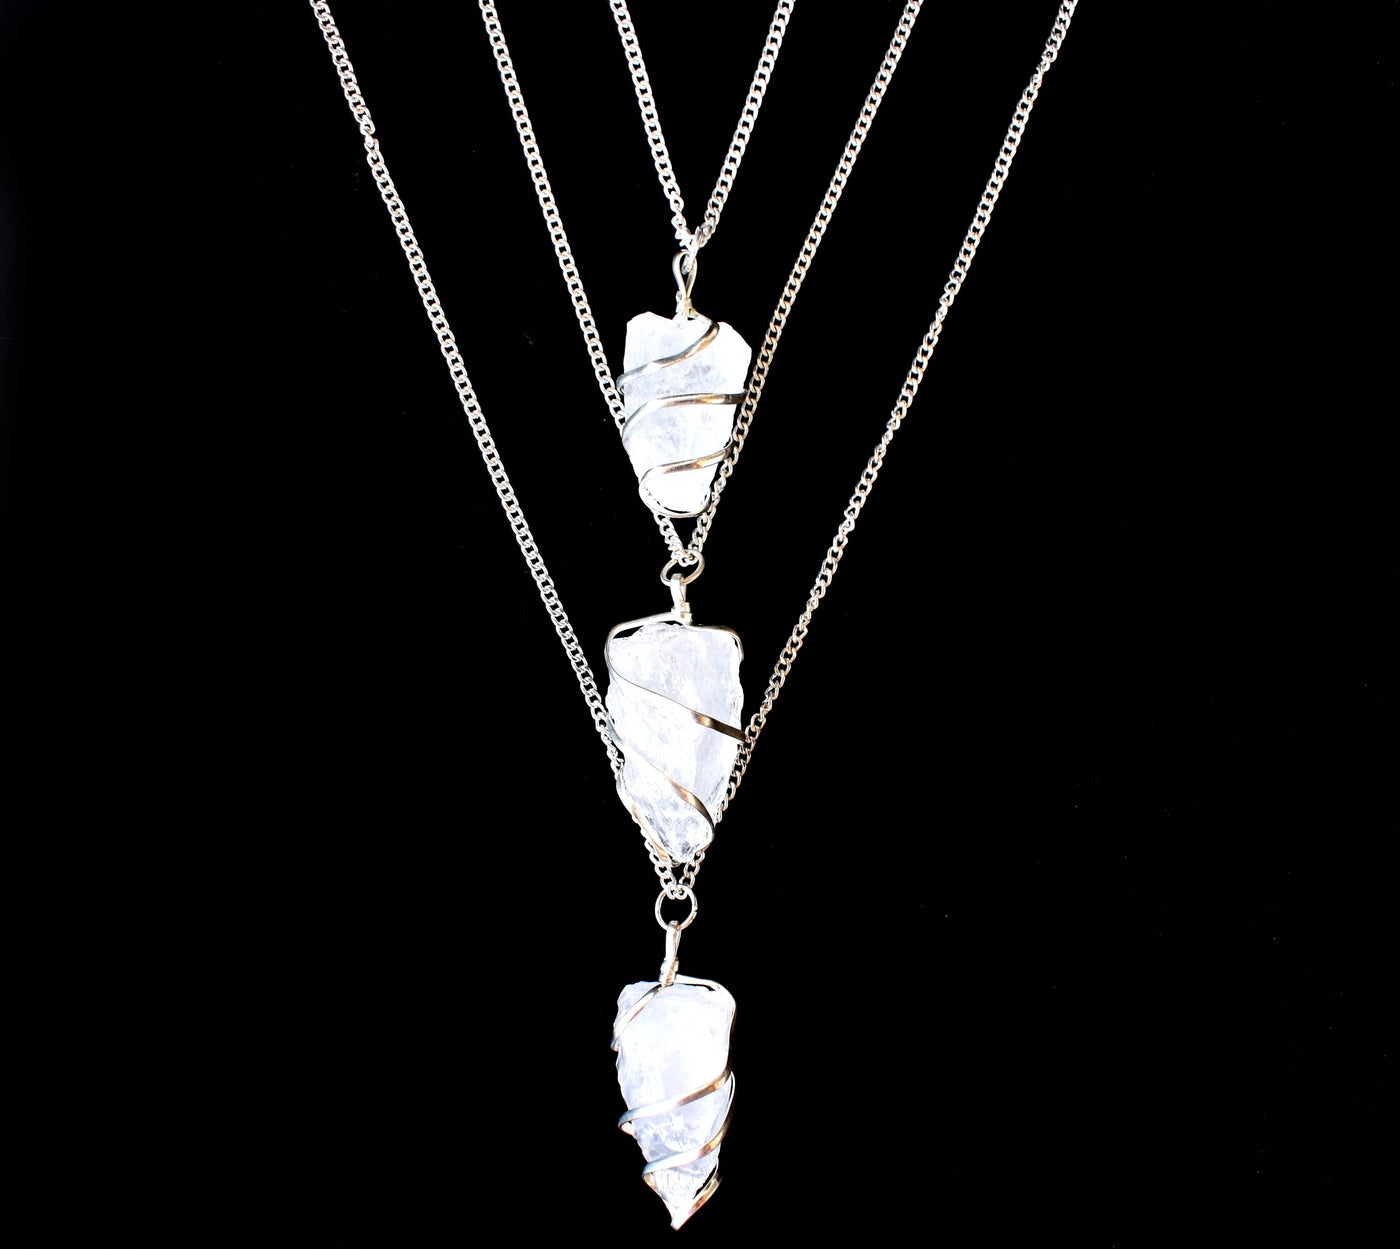 Pendentif en pierre précieuse brute de quartz de cristal, pendentif en pierre de cristal enveloppé de fil brut.